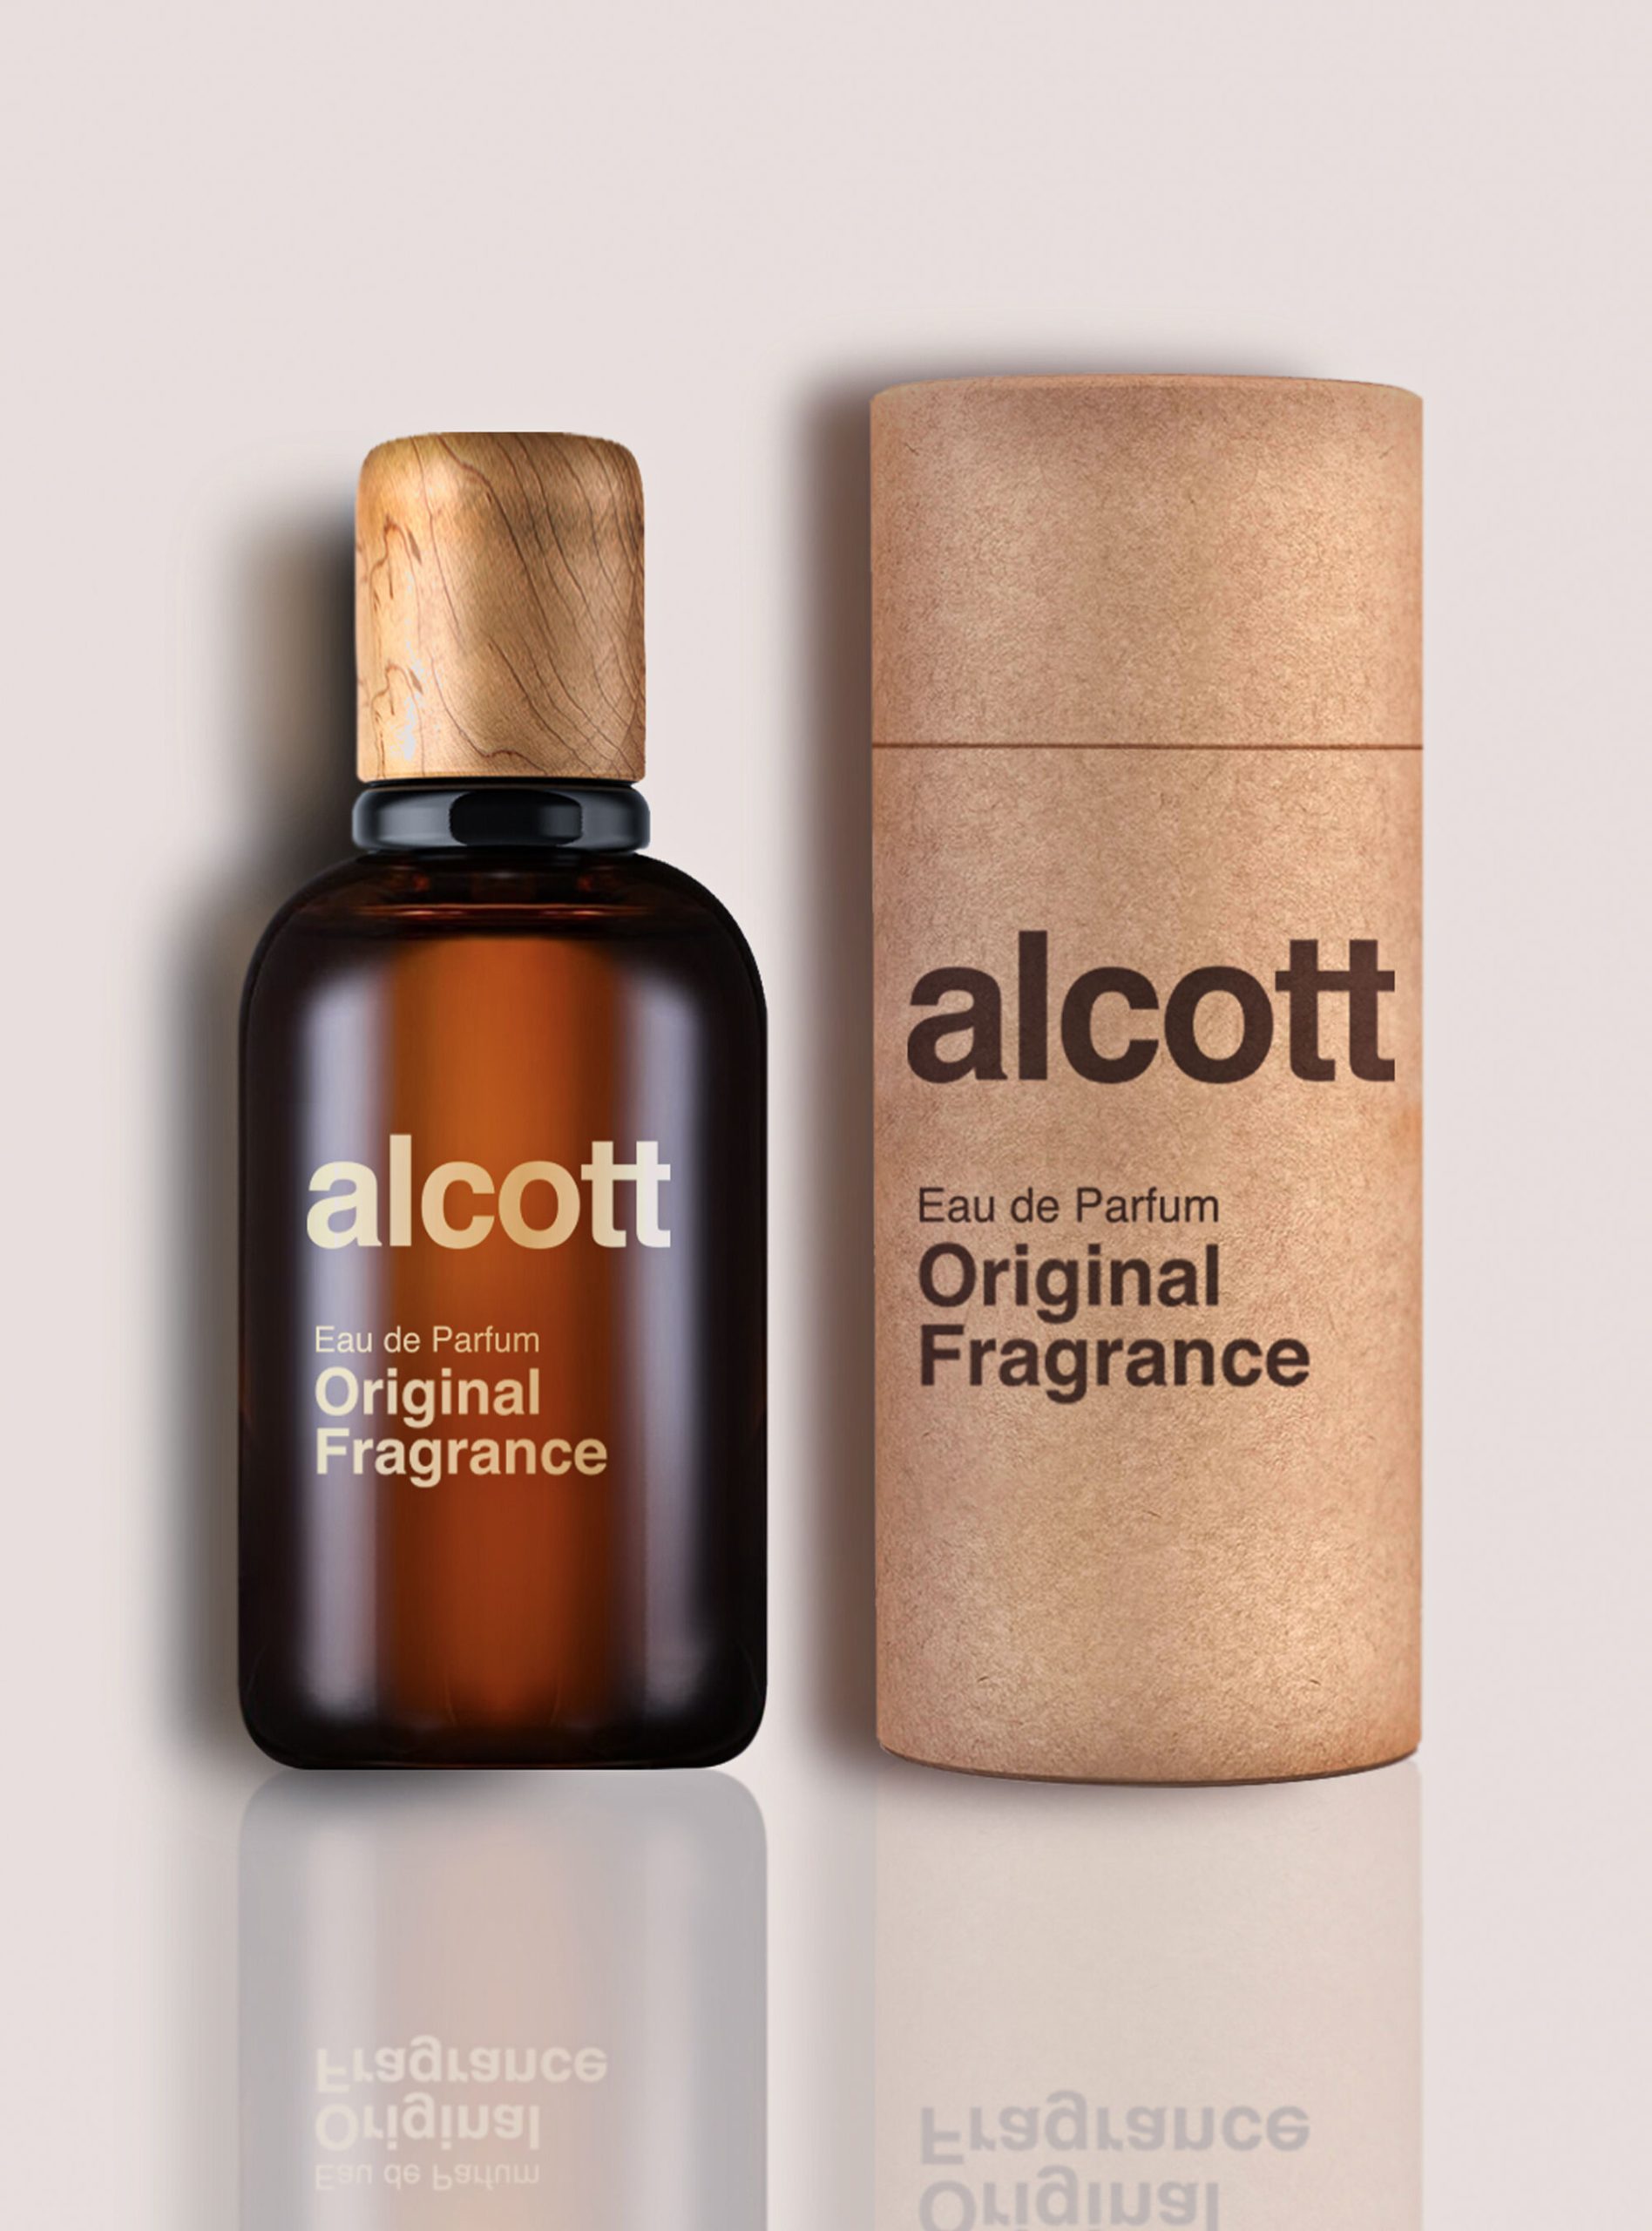 Düfte Männer Empfehlen Alcott Original Fragrance Unico – 2